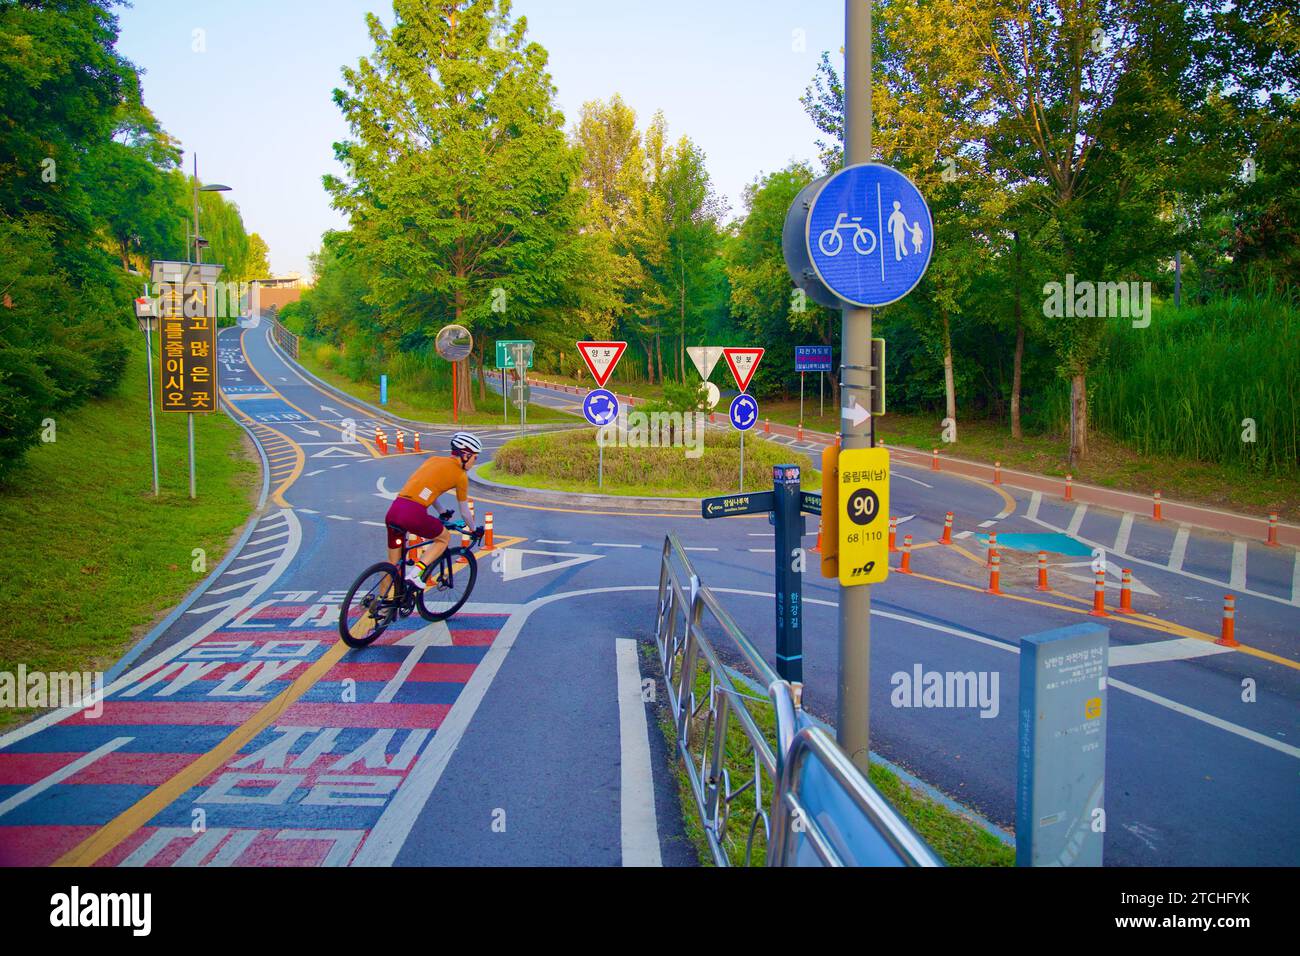 Séoul, Corée du Sud - 2 juin 2023 : au niveau de la rue, un cycliste sur un vélo de route est capturé sur le point d'entrer dans un rond-point, illustrant le cyclisme actif Banque D'Images